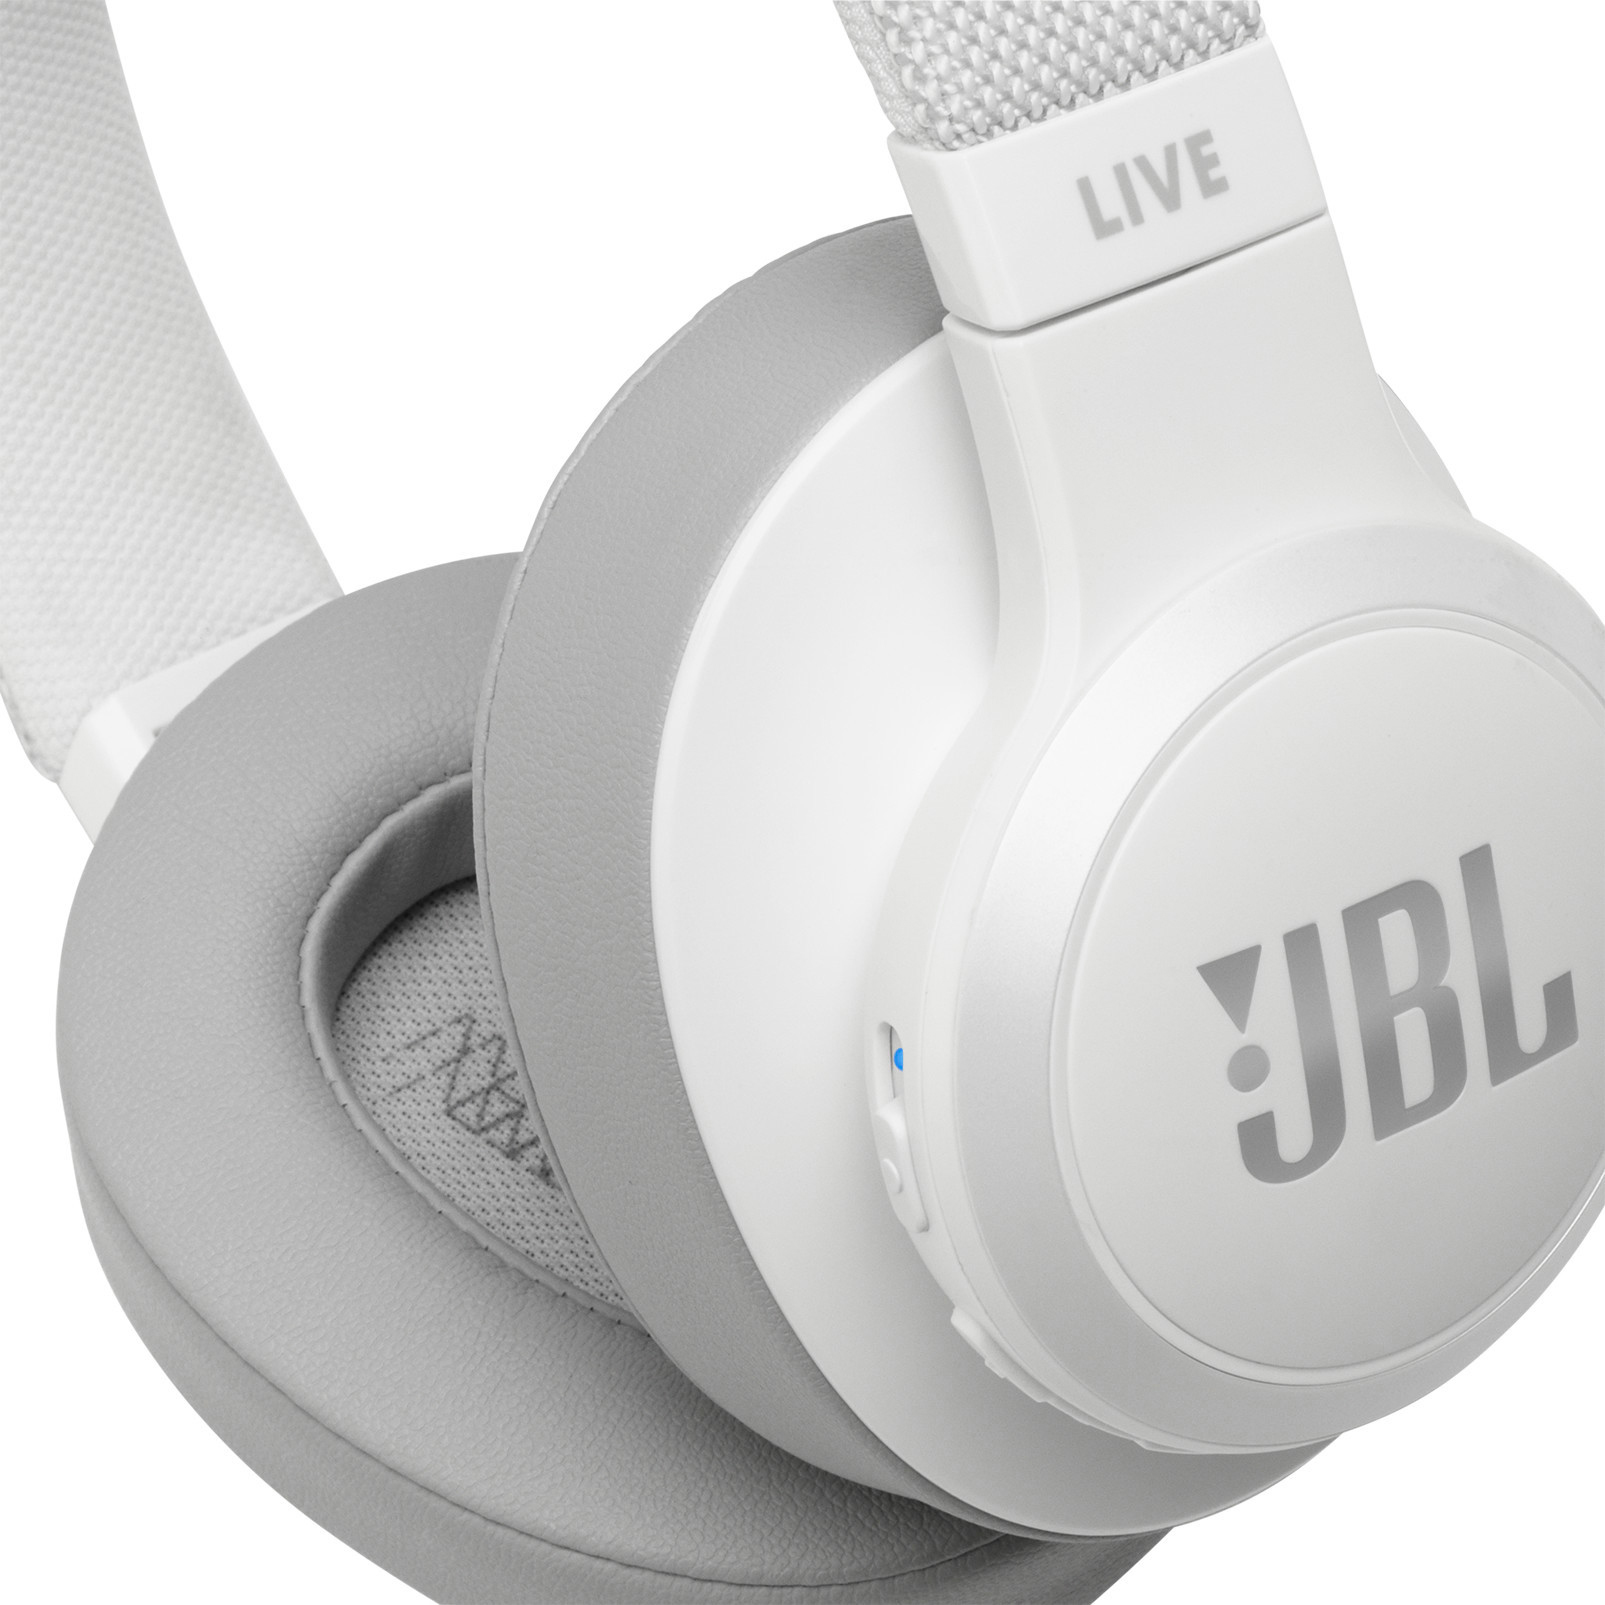 Live Kopfhörer Bluetooth 500 BT, On-ear Weiß JBL